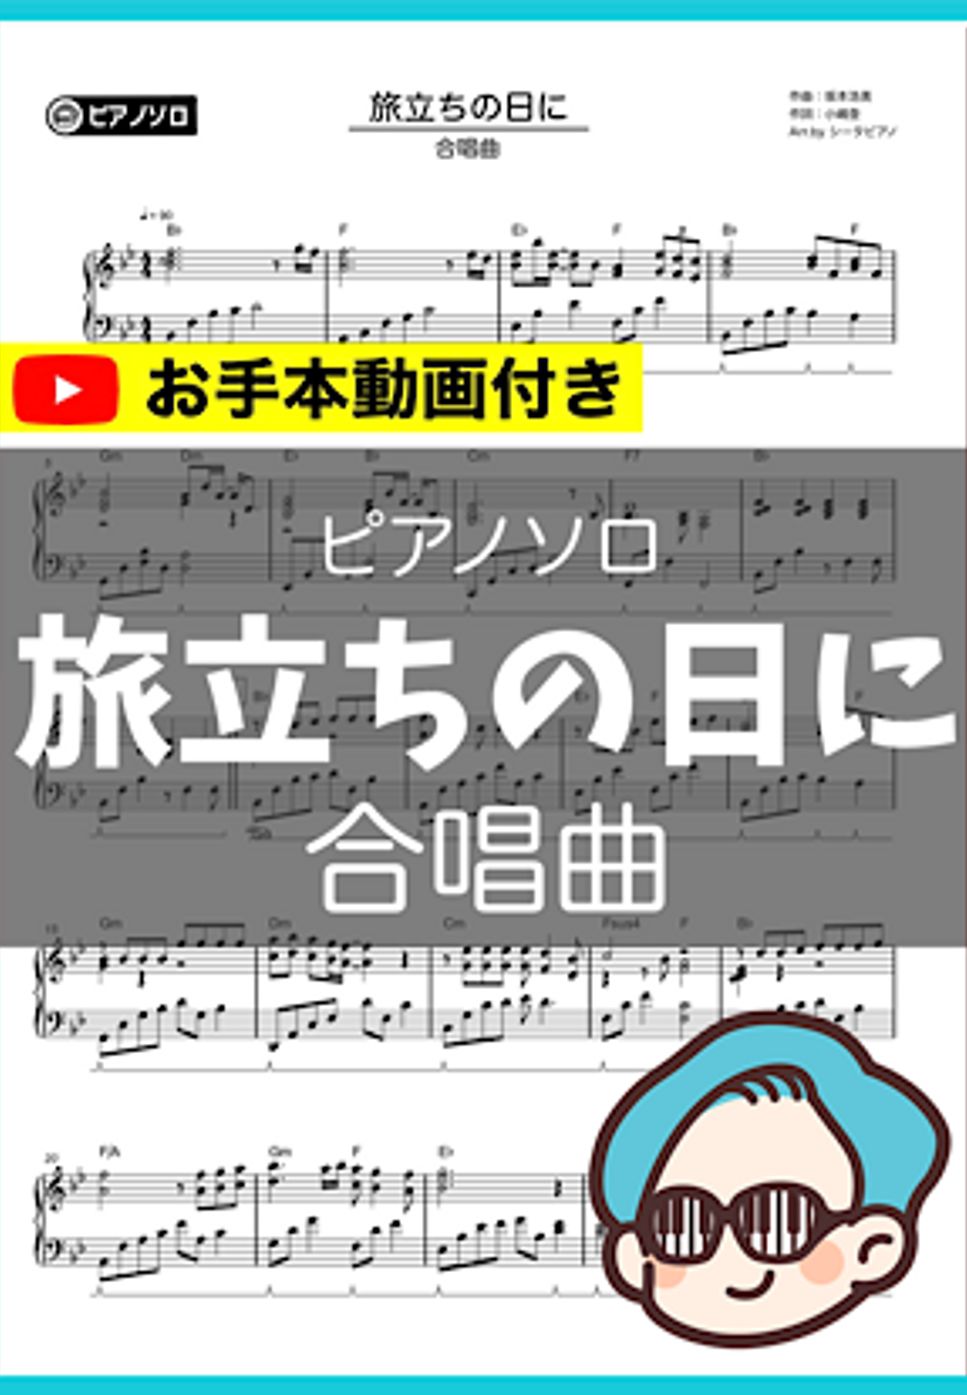 合唱曲 - 旅立ちの日に by シータピアノ